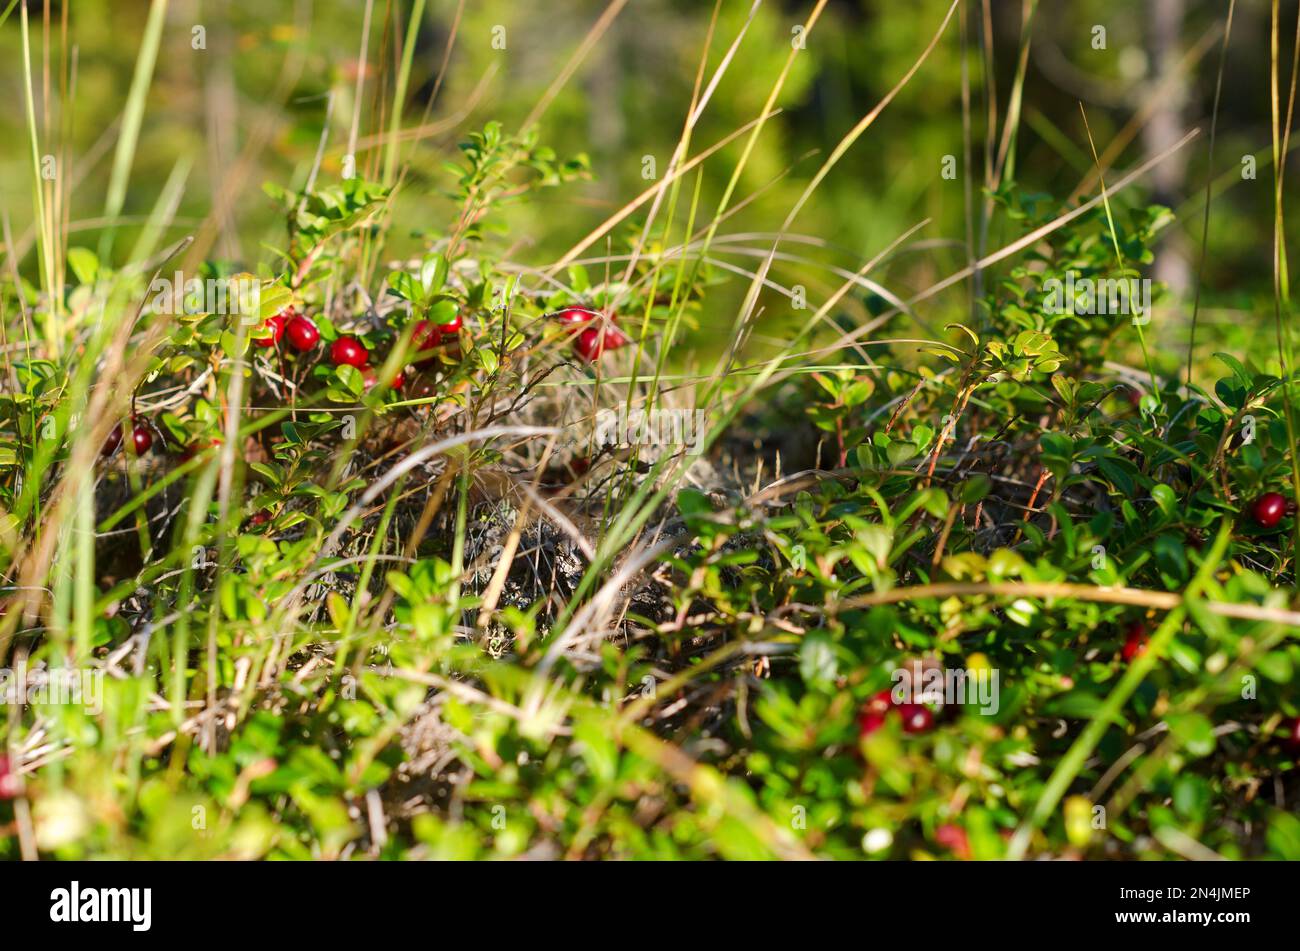 Les canneberges sauvages poussent parmi l'herbe dans une clairière de la forêt du Nord, éclairée par la lumière du soleil. Banque D'Images